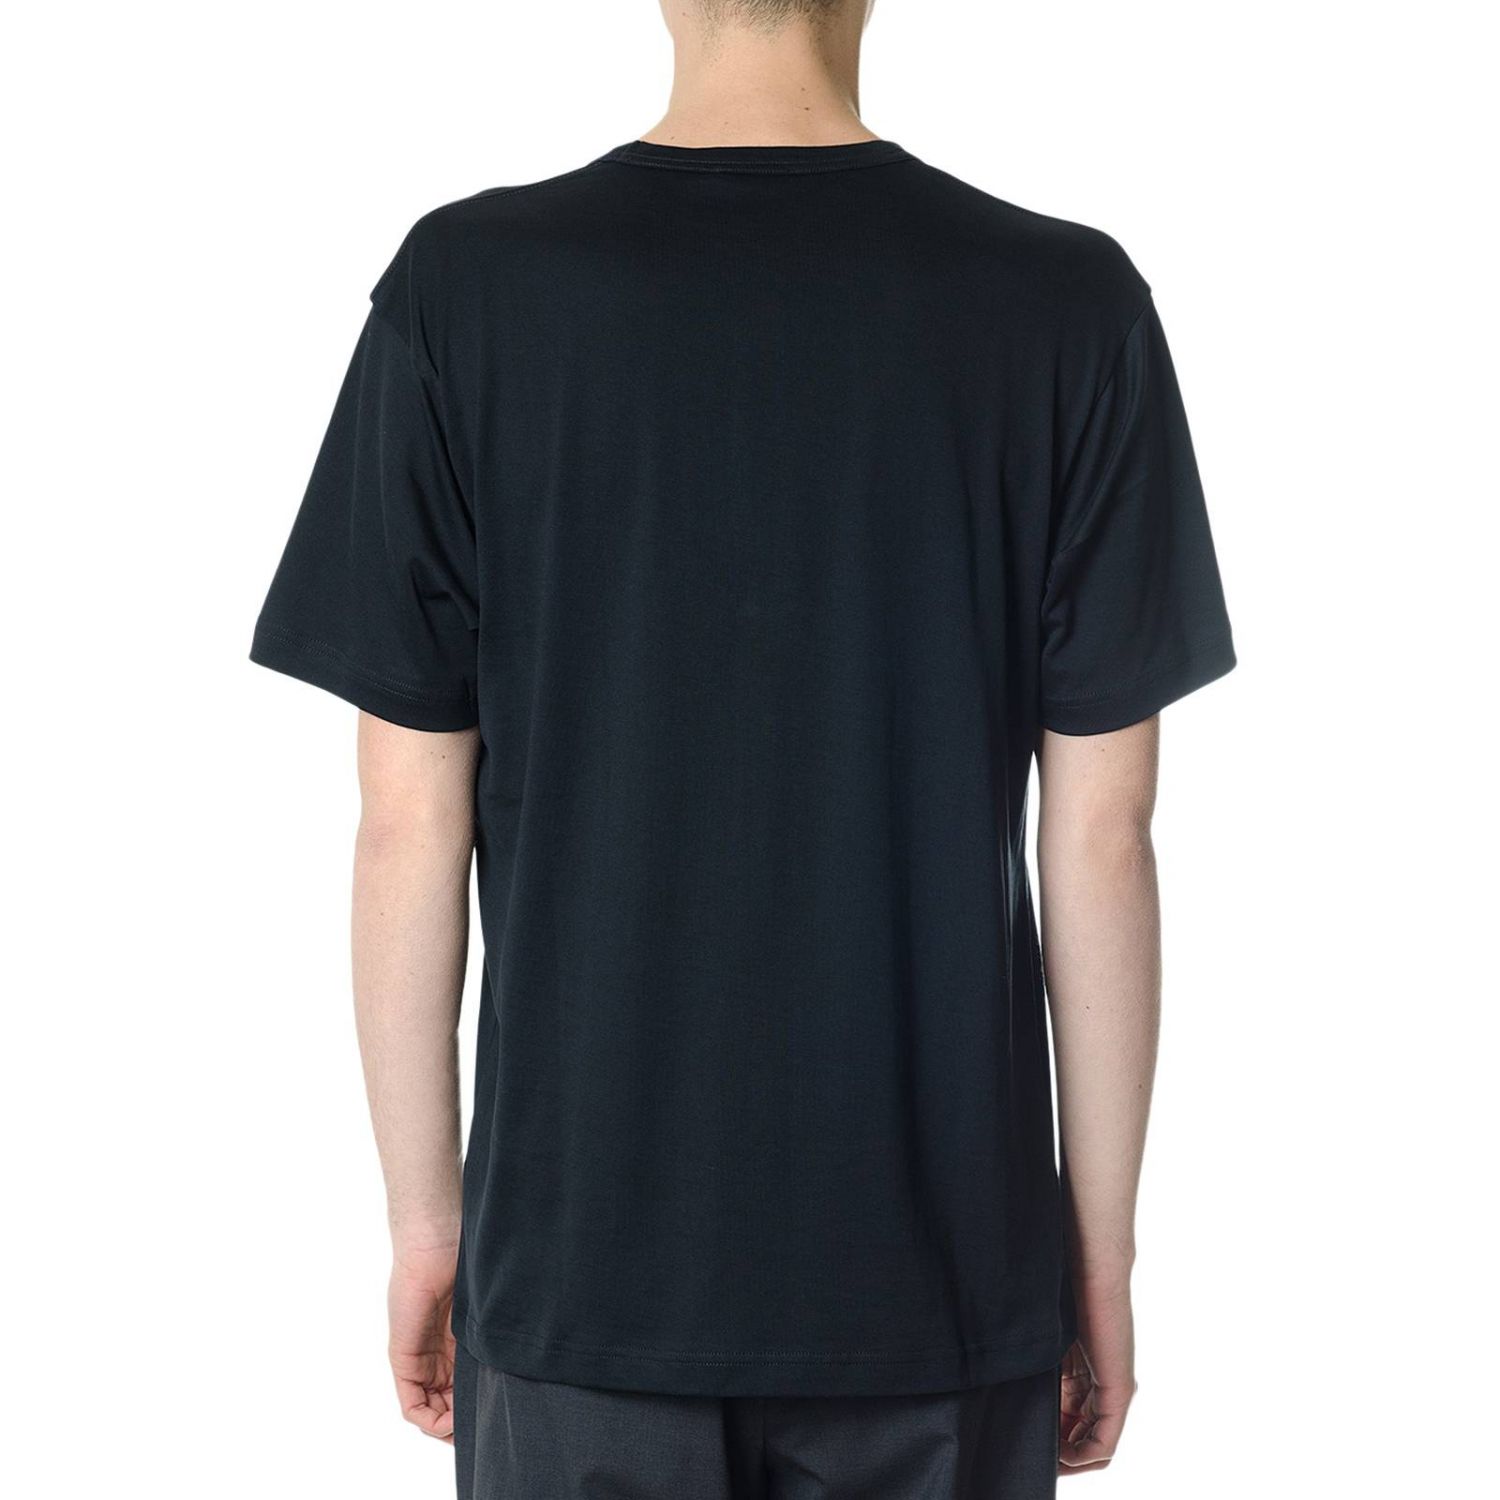 Acne Studios Outlet: T-shirt men - Black | T-Shirt Acne Studios 25E173 ...